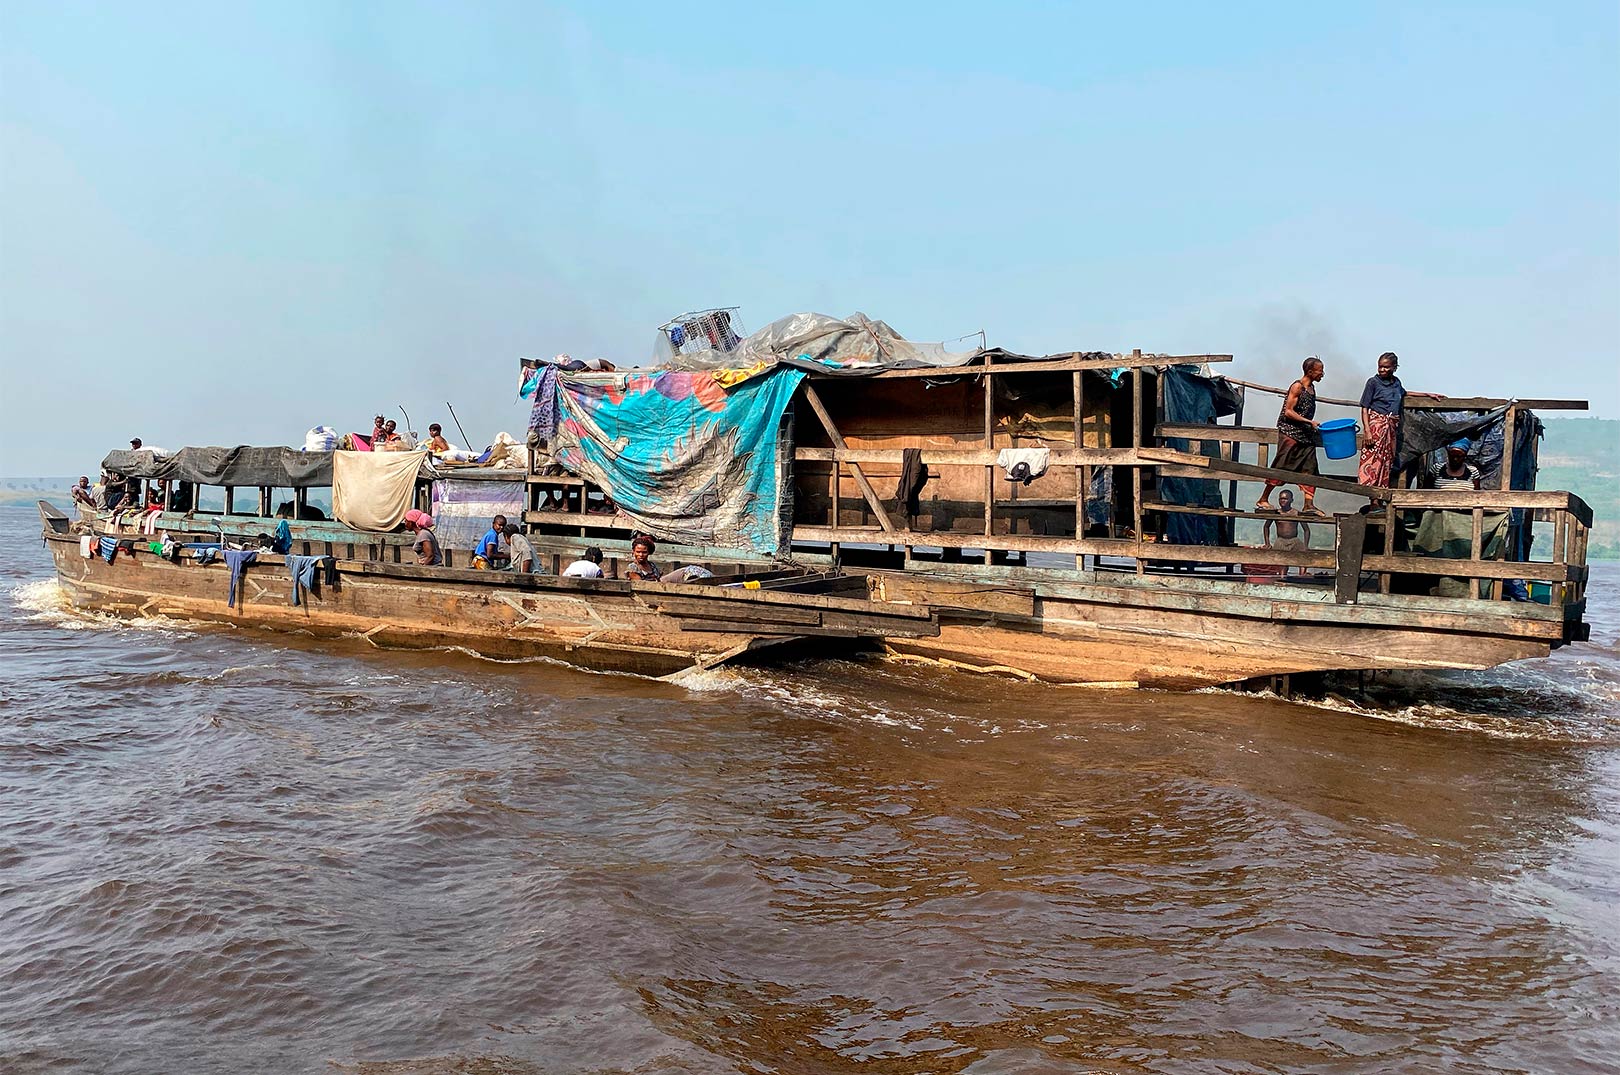 Når man fisker på Congofloden, der er hovedfærdselsåren gennem landet - ser man mange både som denne passere forbi.